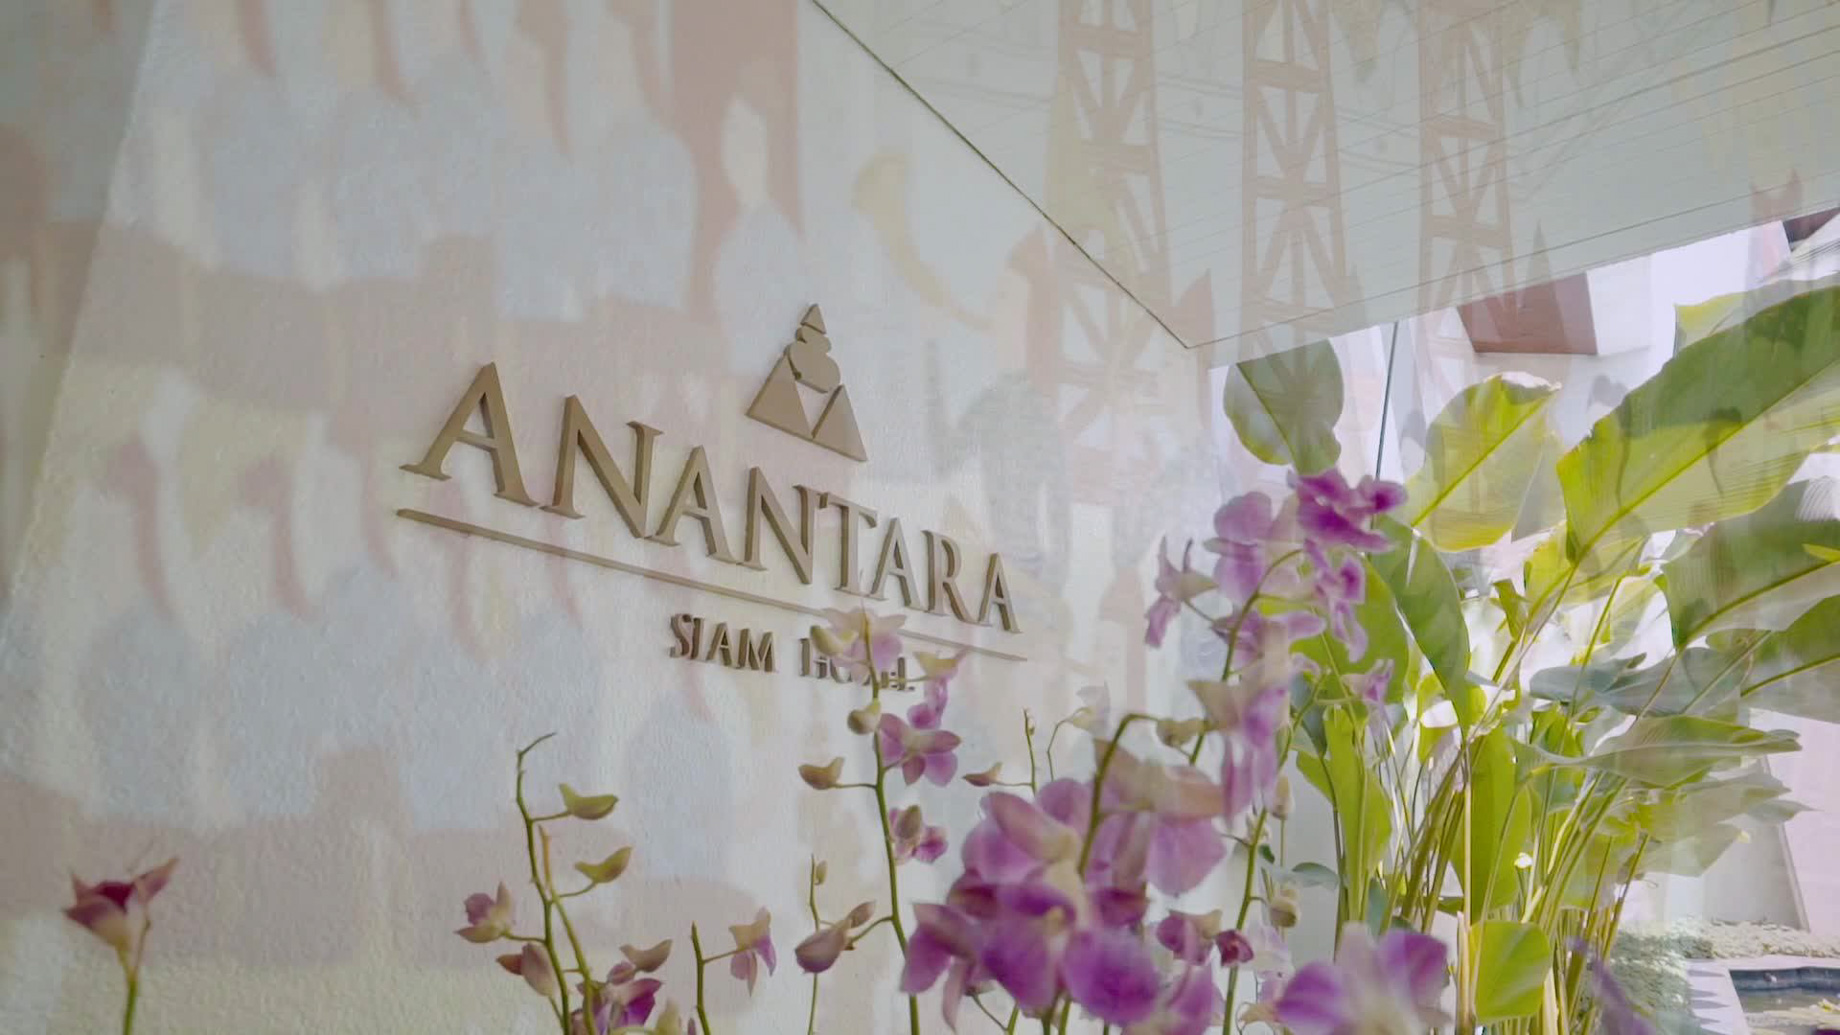 Anantara Siam Bangkok Hotel – Thailand – Sign